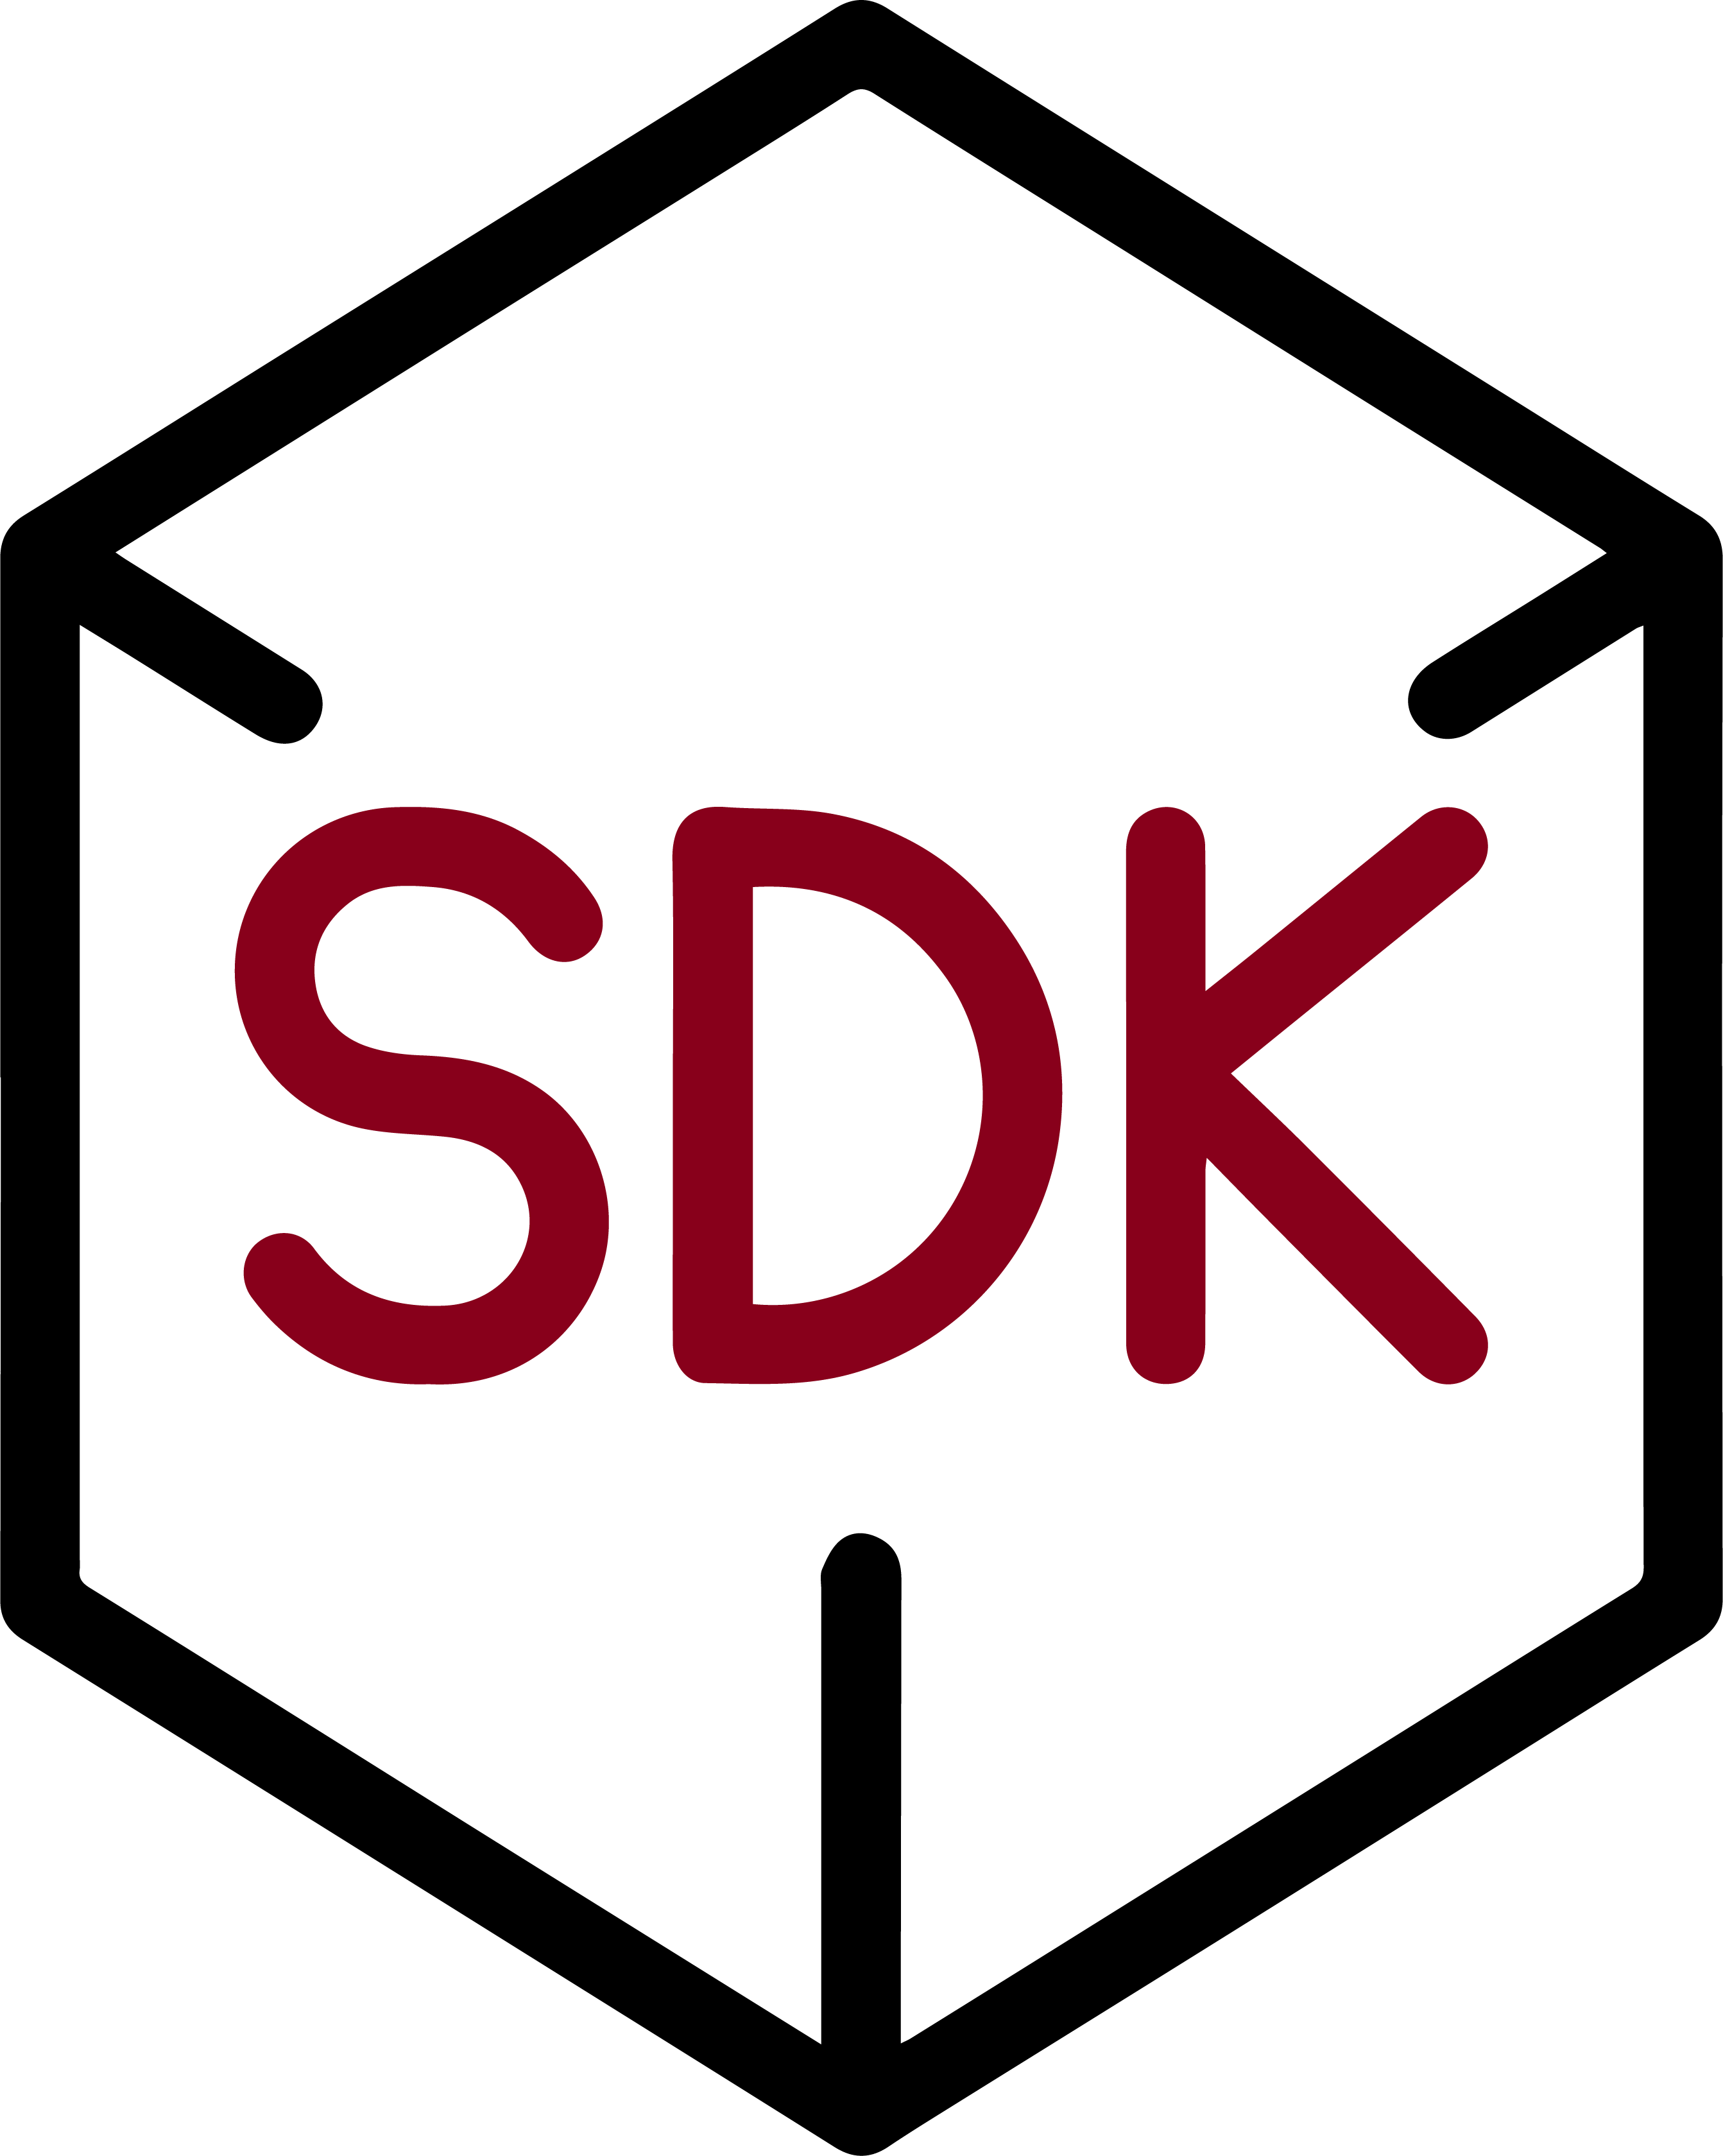 Powerful SDK